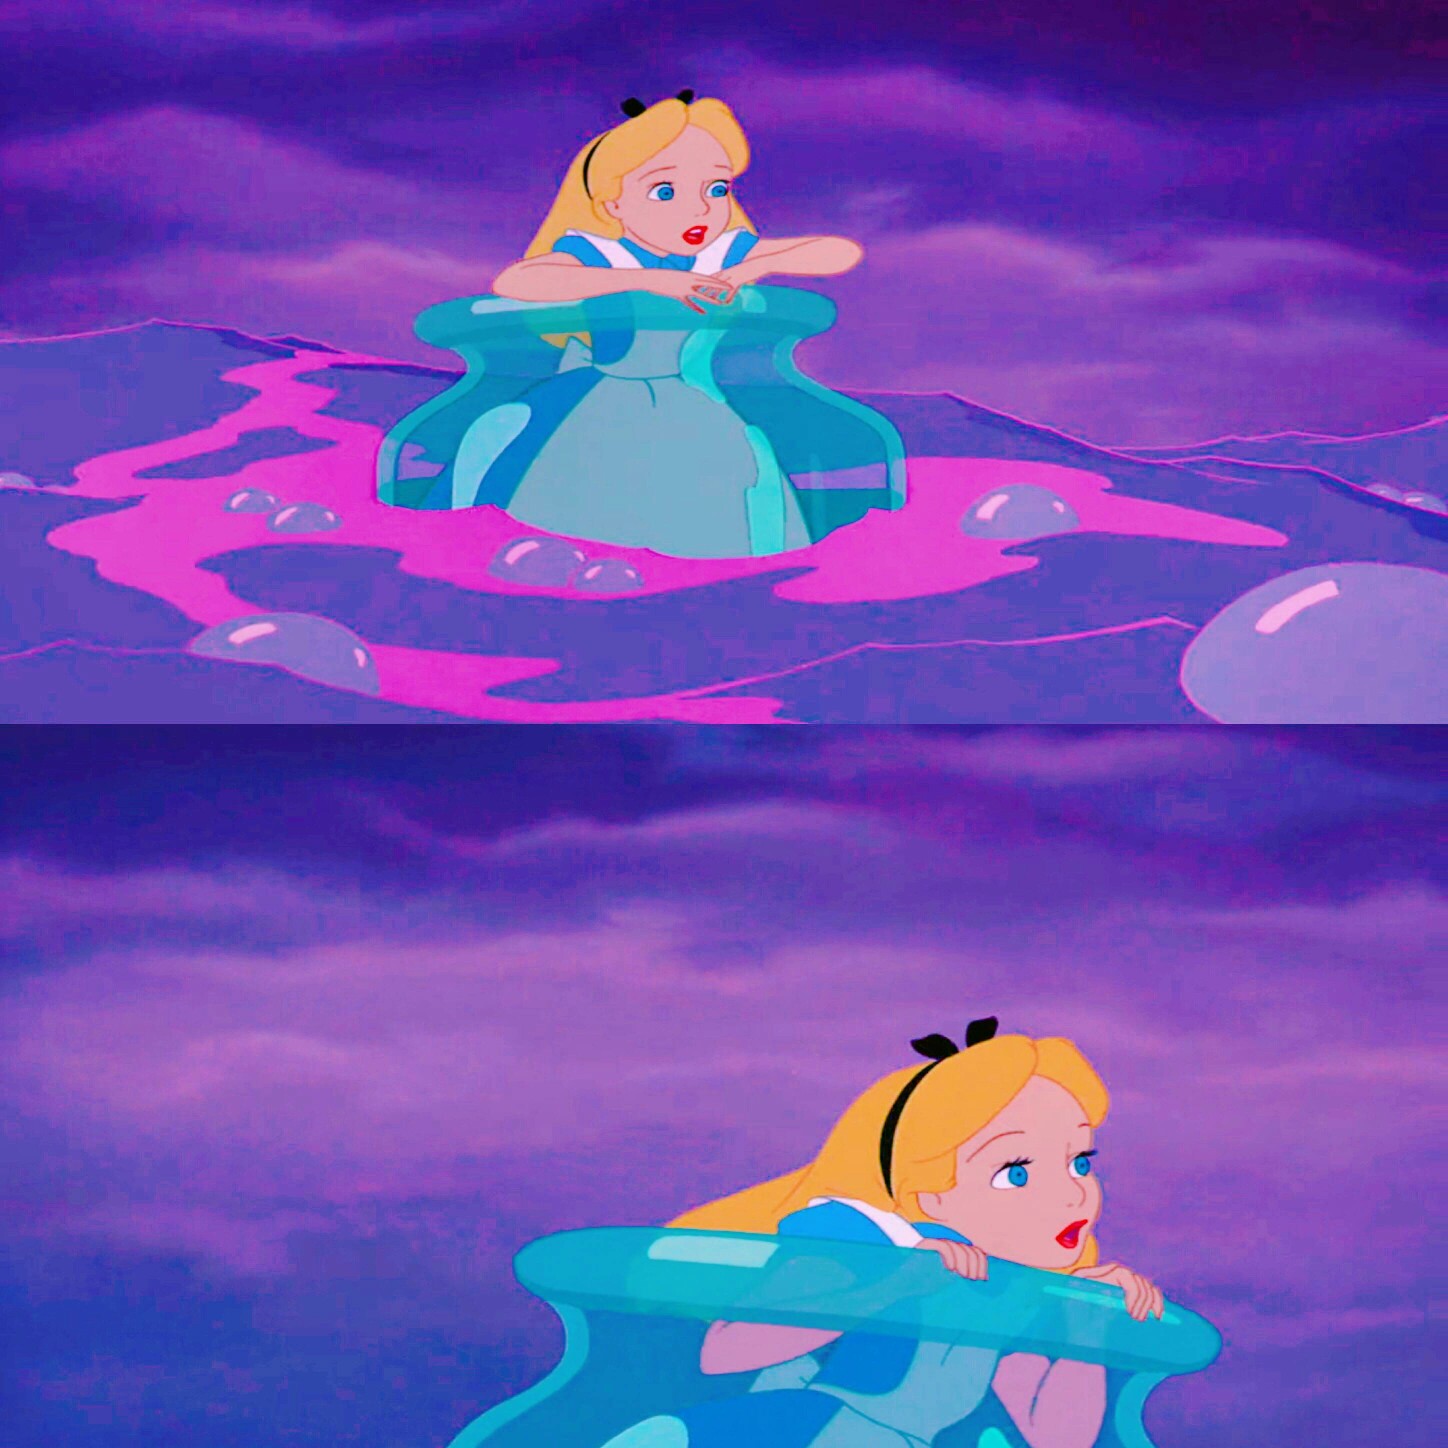 迪士尼公主 爱丽丝梦游仙境 高清 无水印 头像 背景图 壁纸